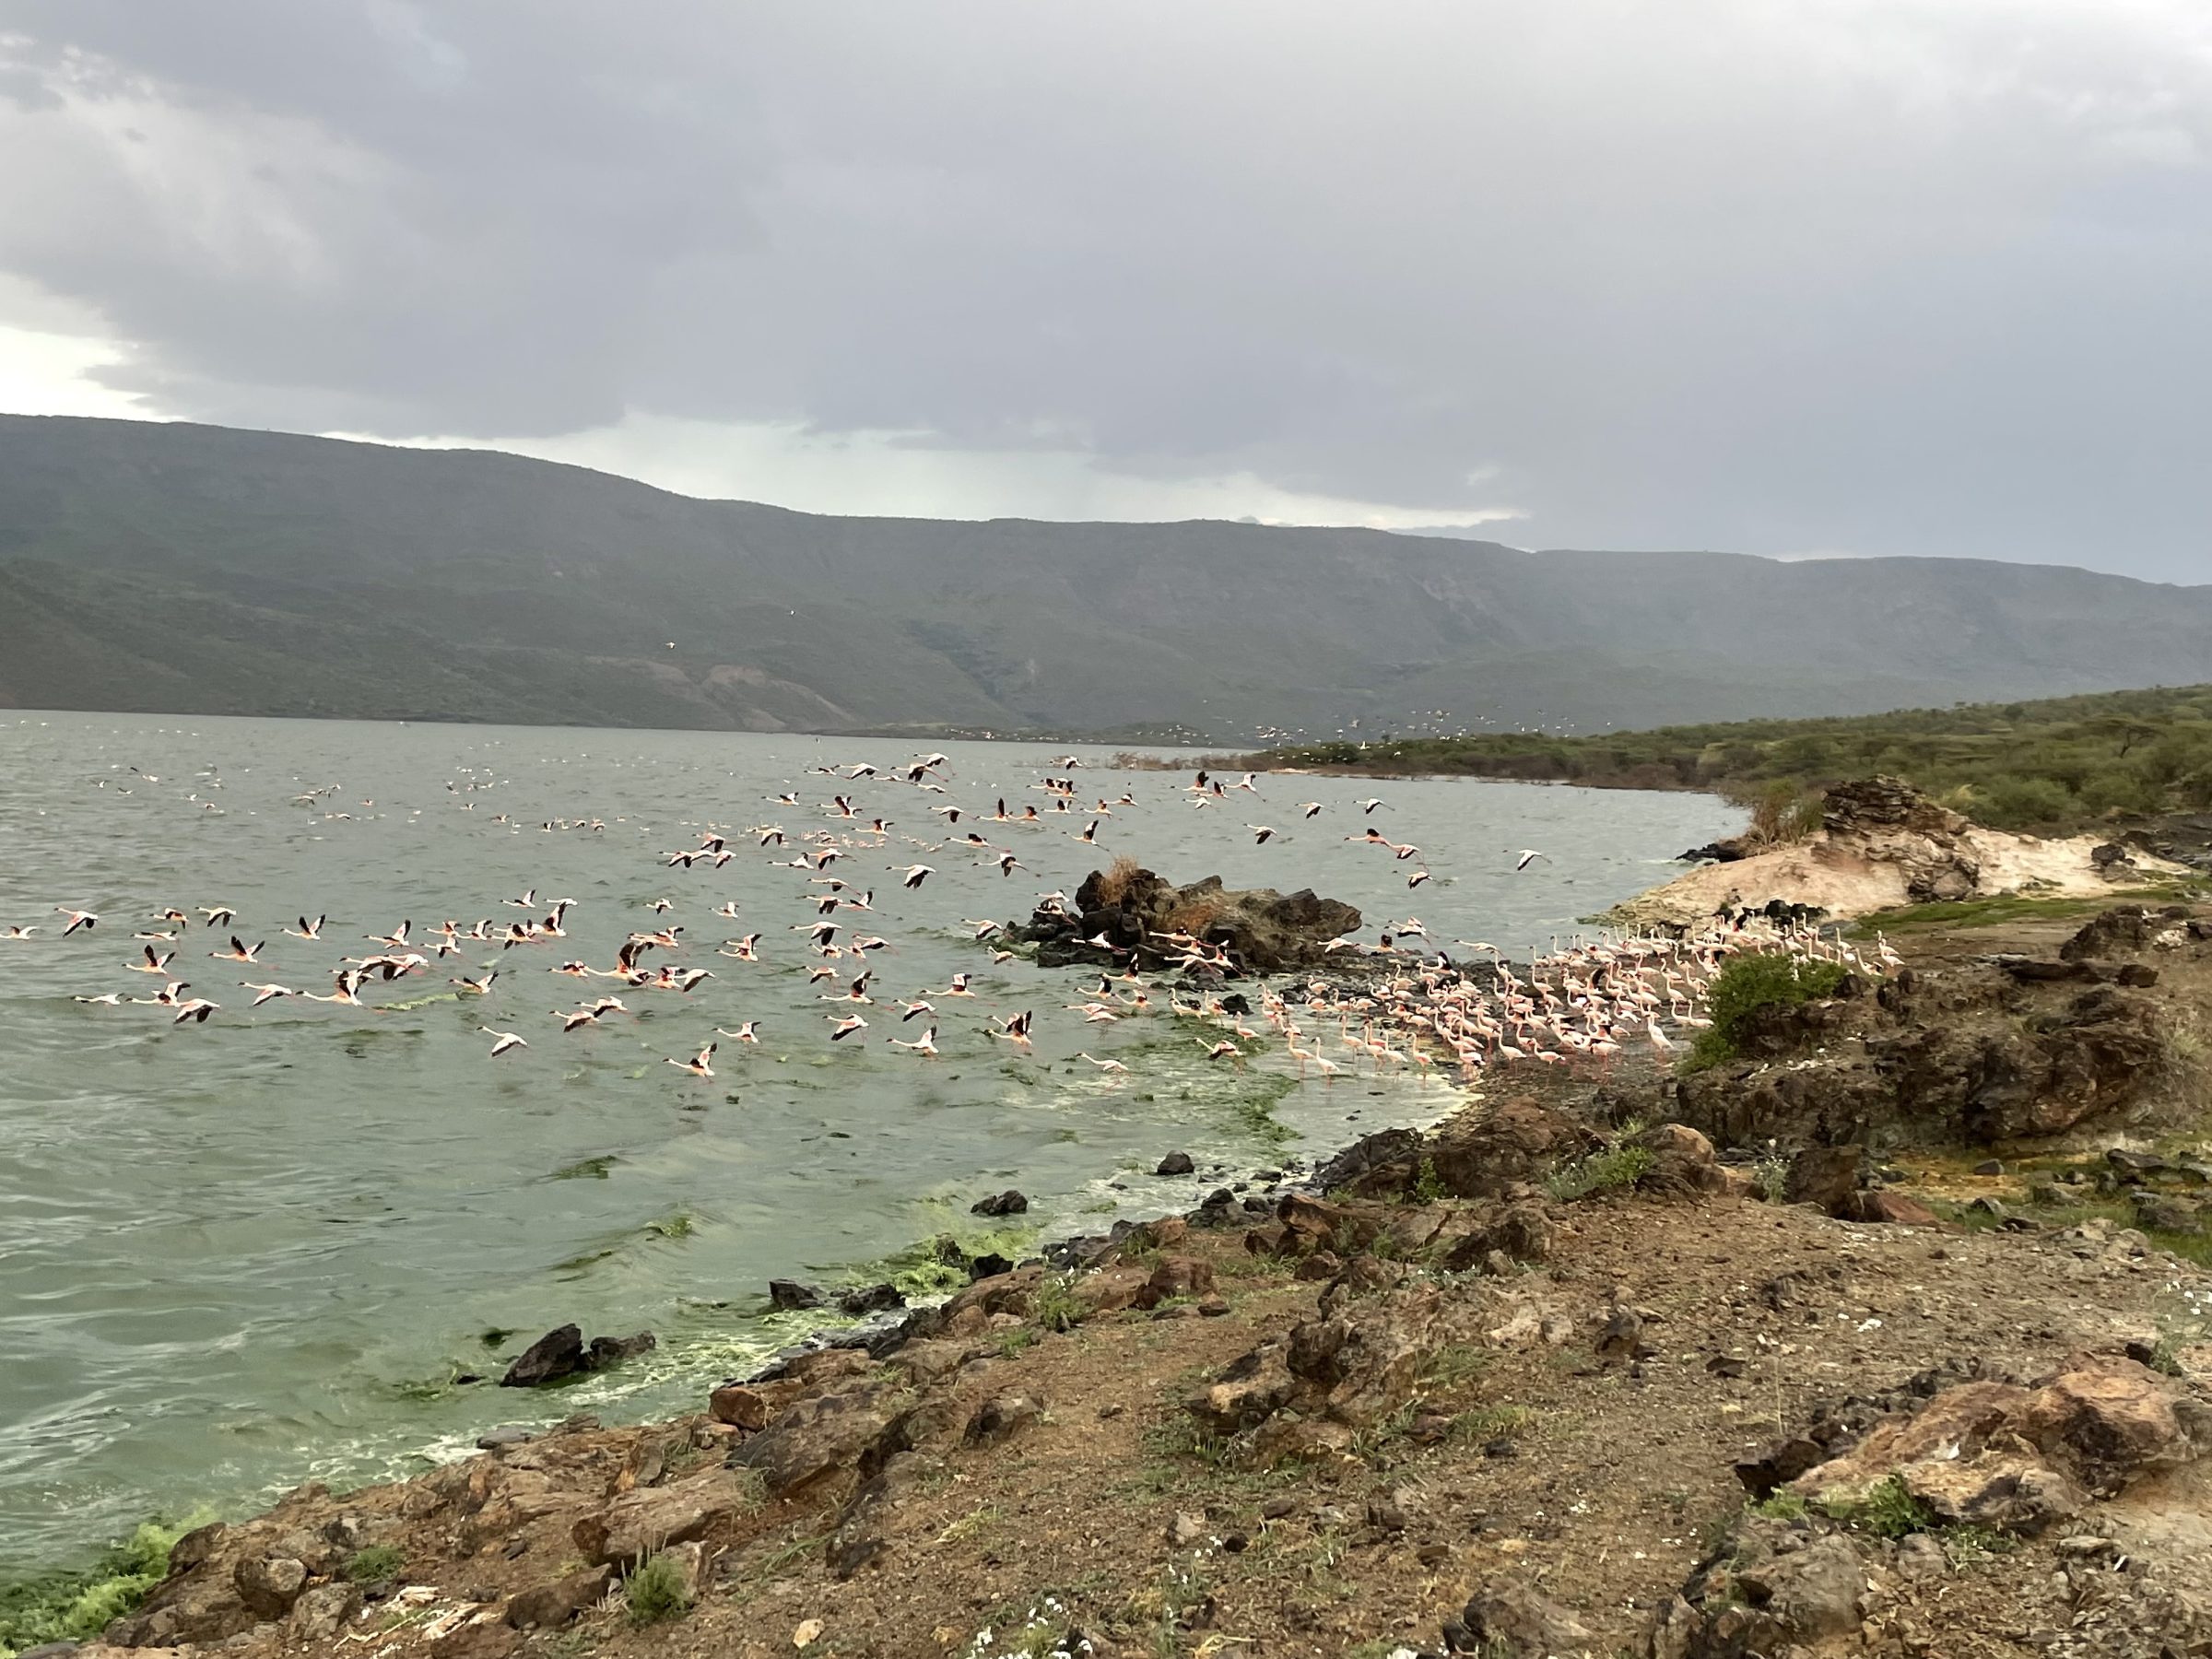 De overgebleven flamingo's in 2021 i het gifgroene water